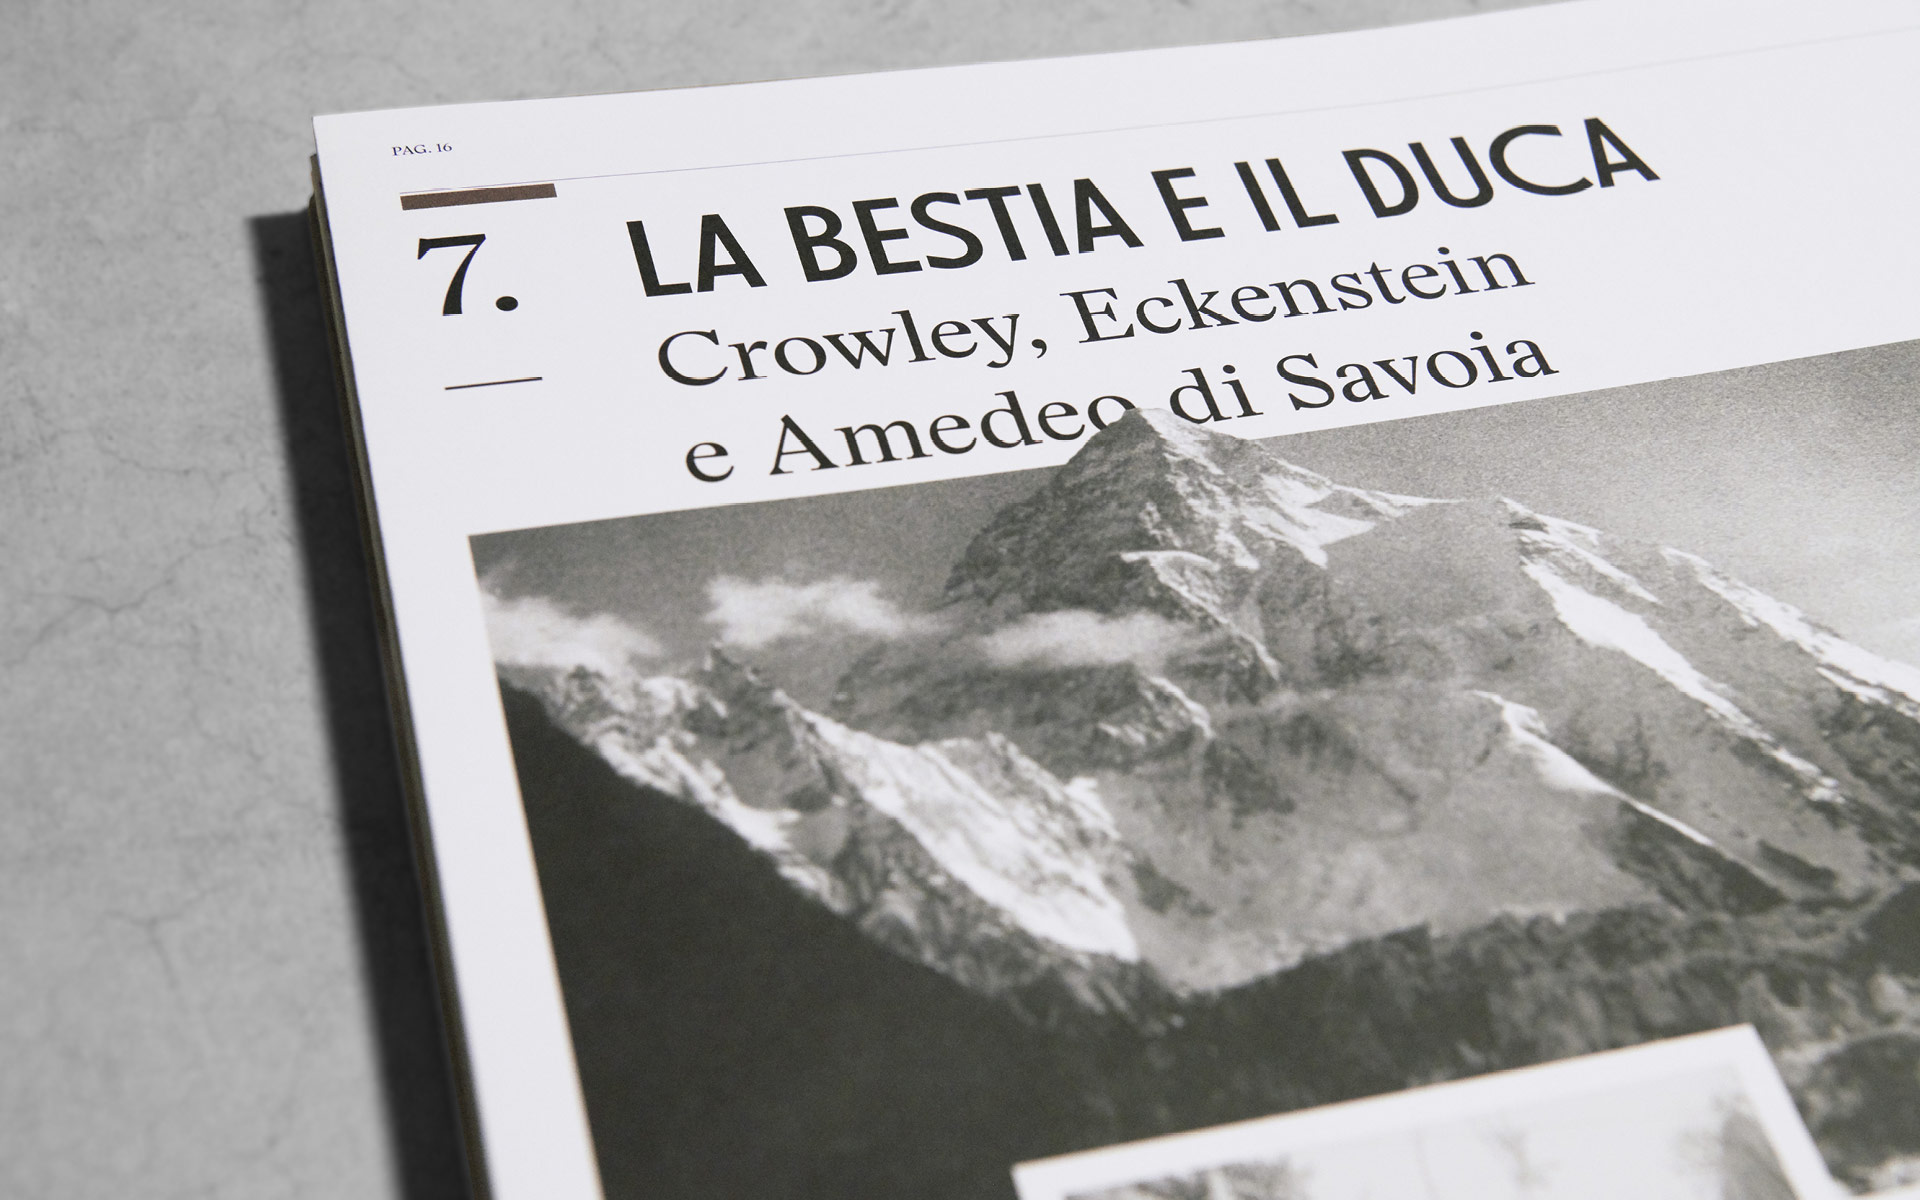 Dettagli del libro 'K2 Storia della Montagna Impossibile' pubblicato da Rizzoli Lizard